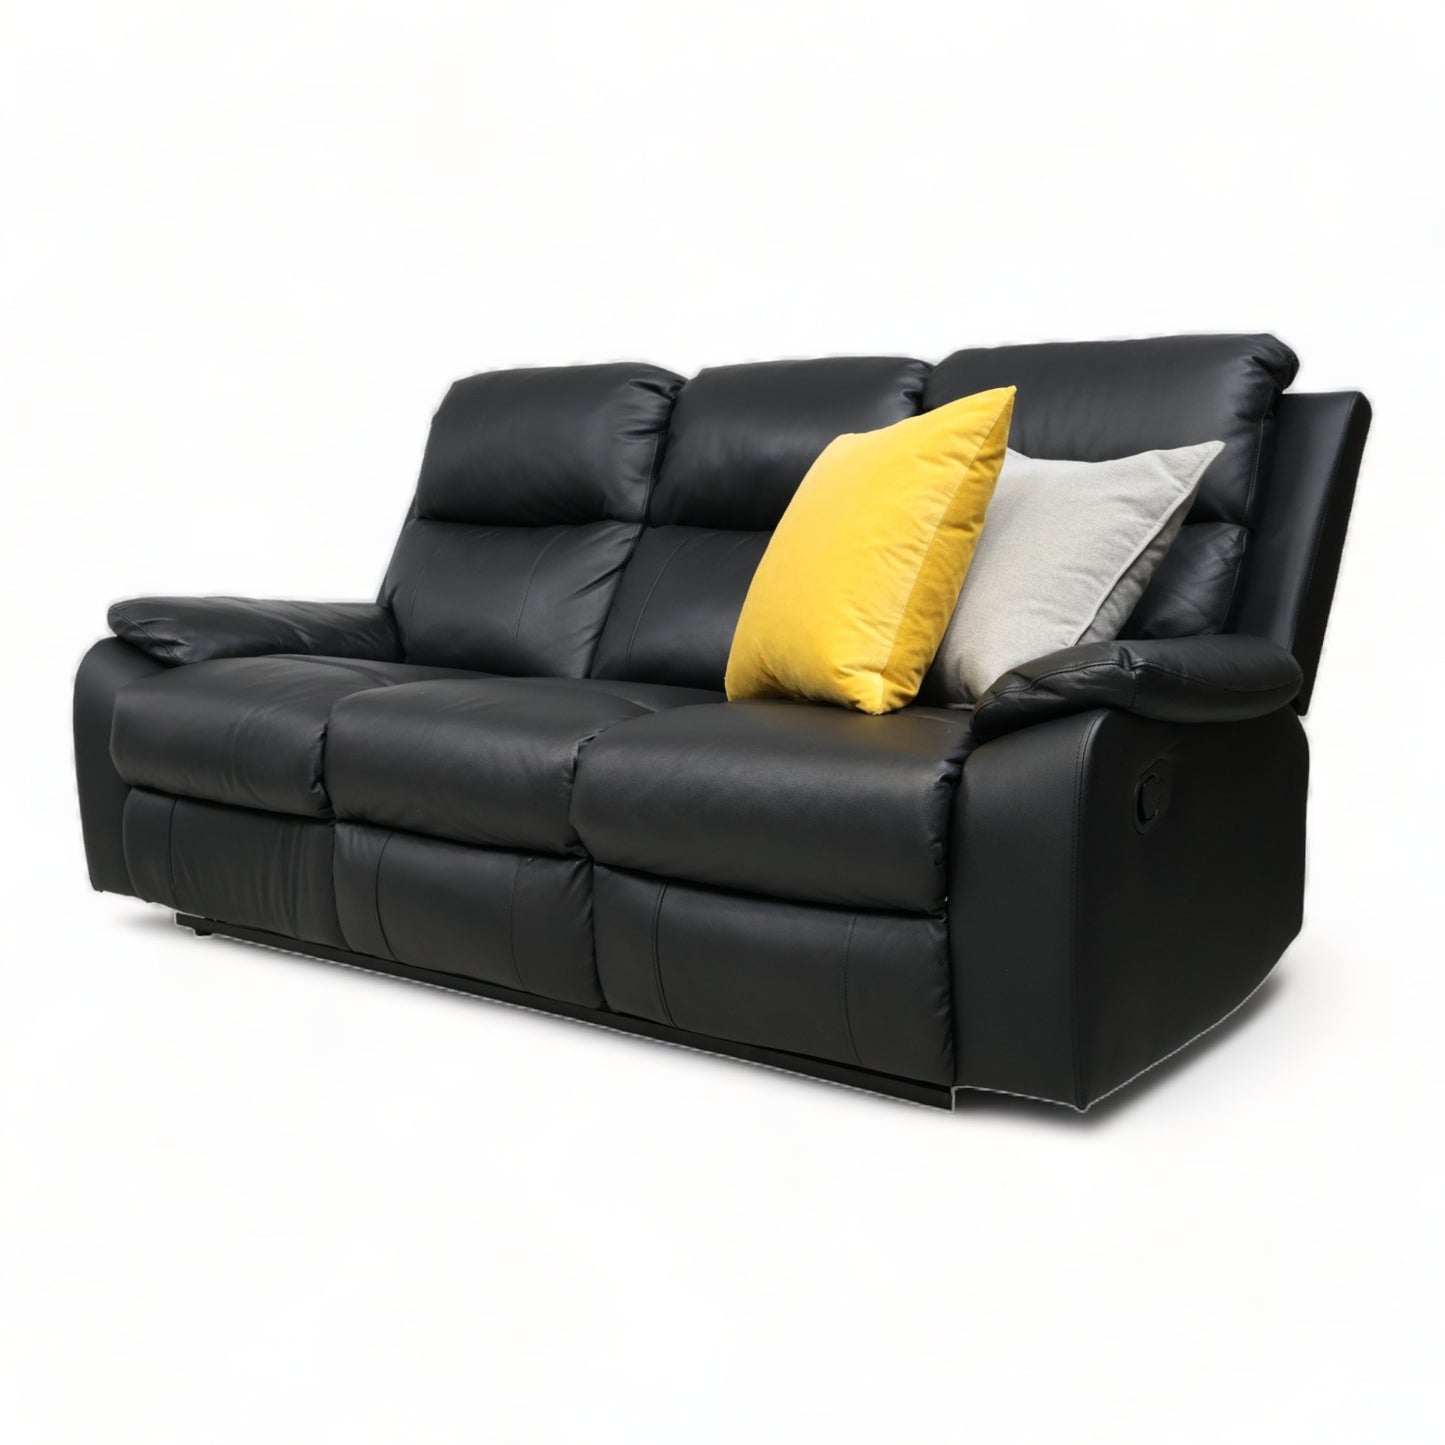 Nyrenset | Sort 3-seter Mora sofa med recliner fra A-Møbler